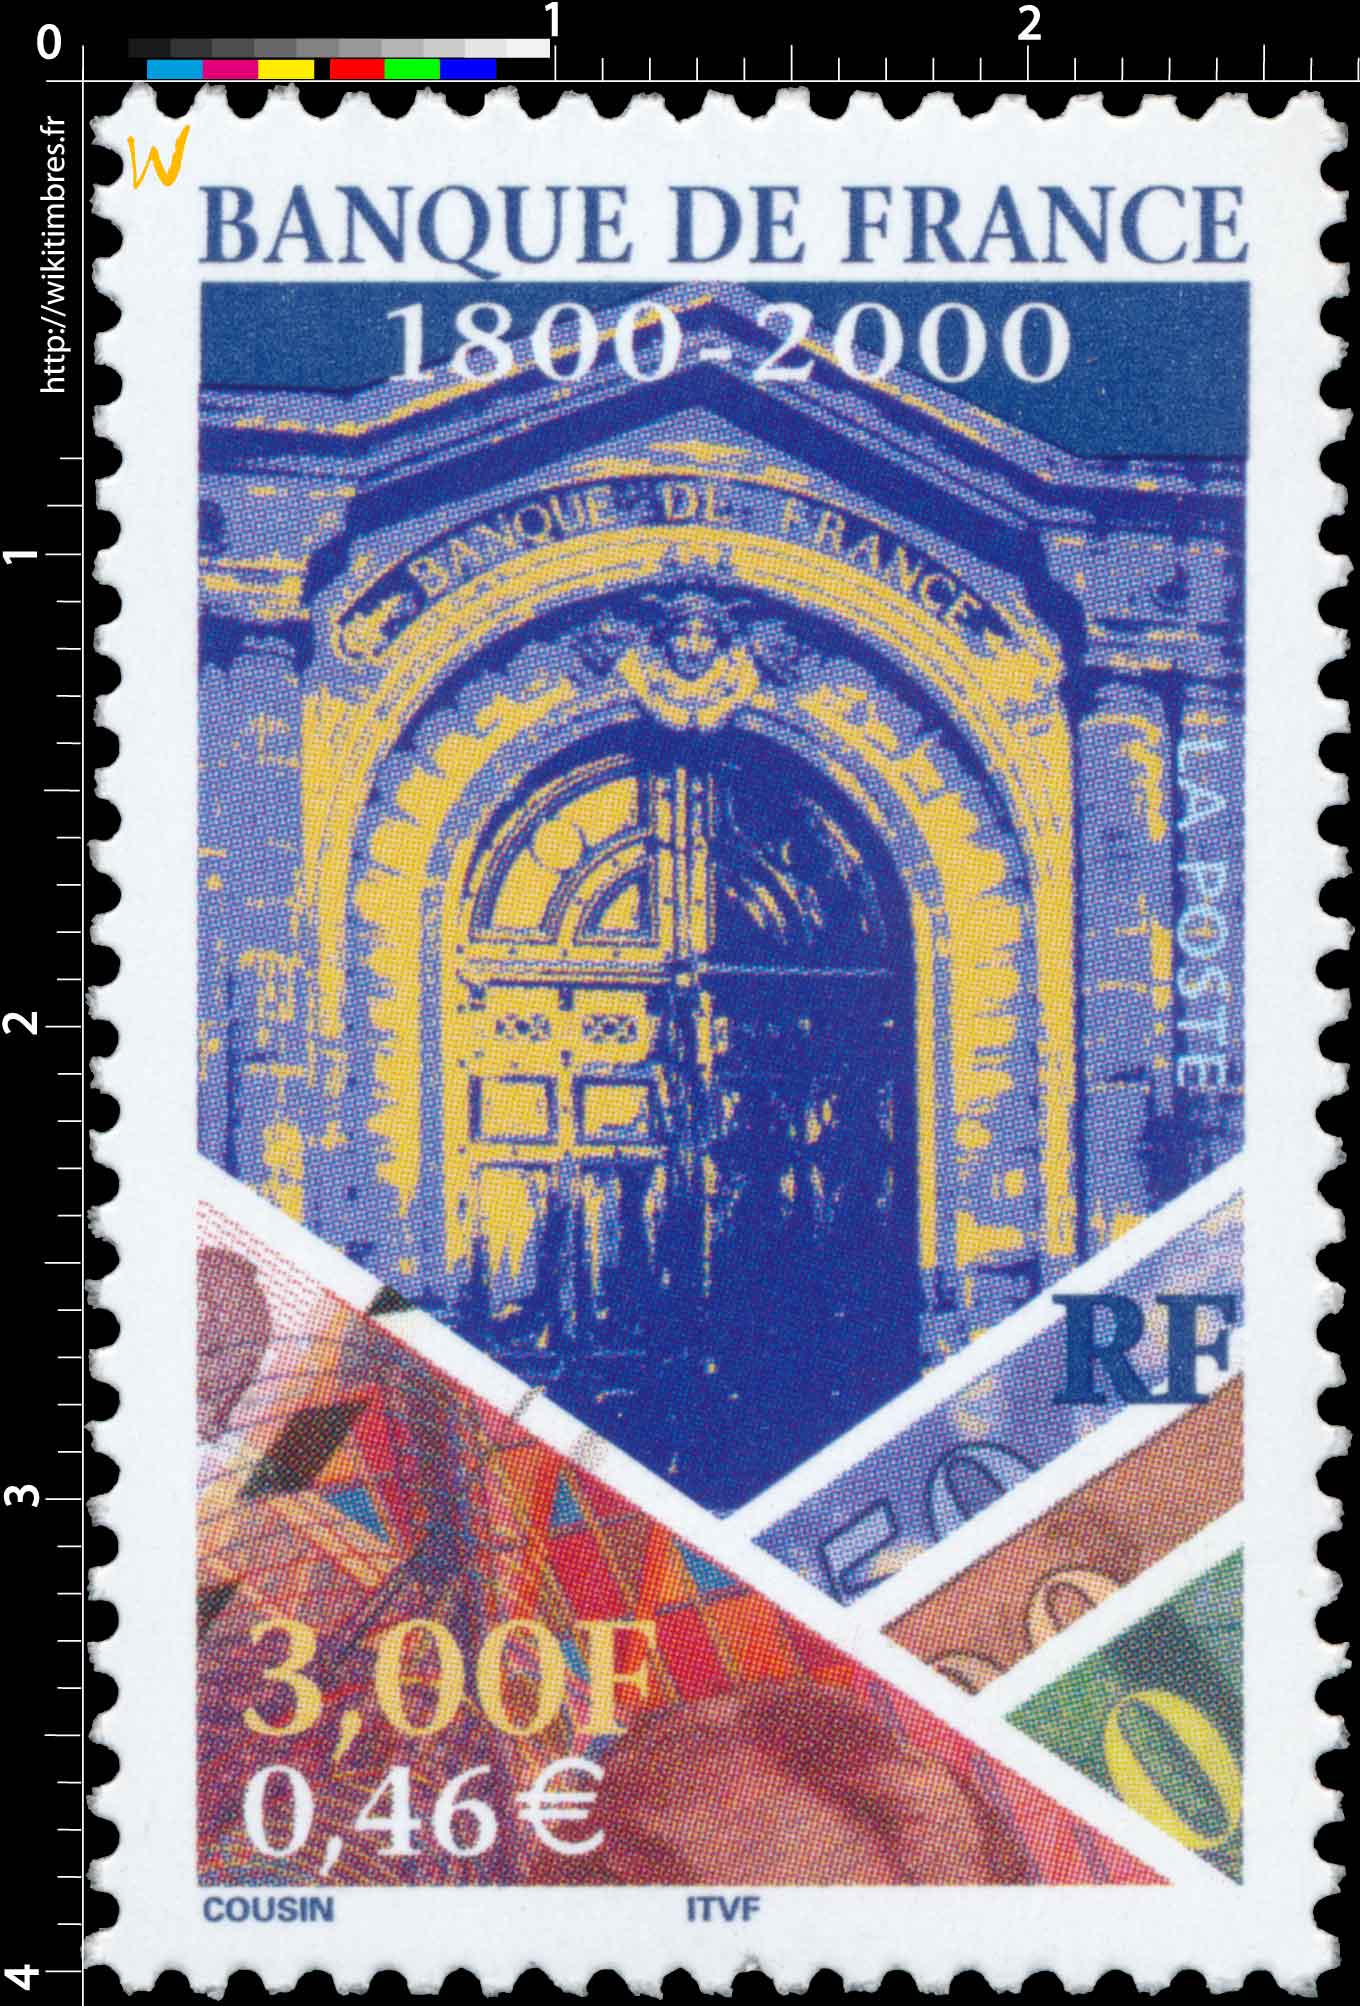 BANQUE DE FRANCE 1800-2000